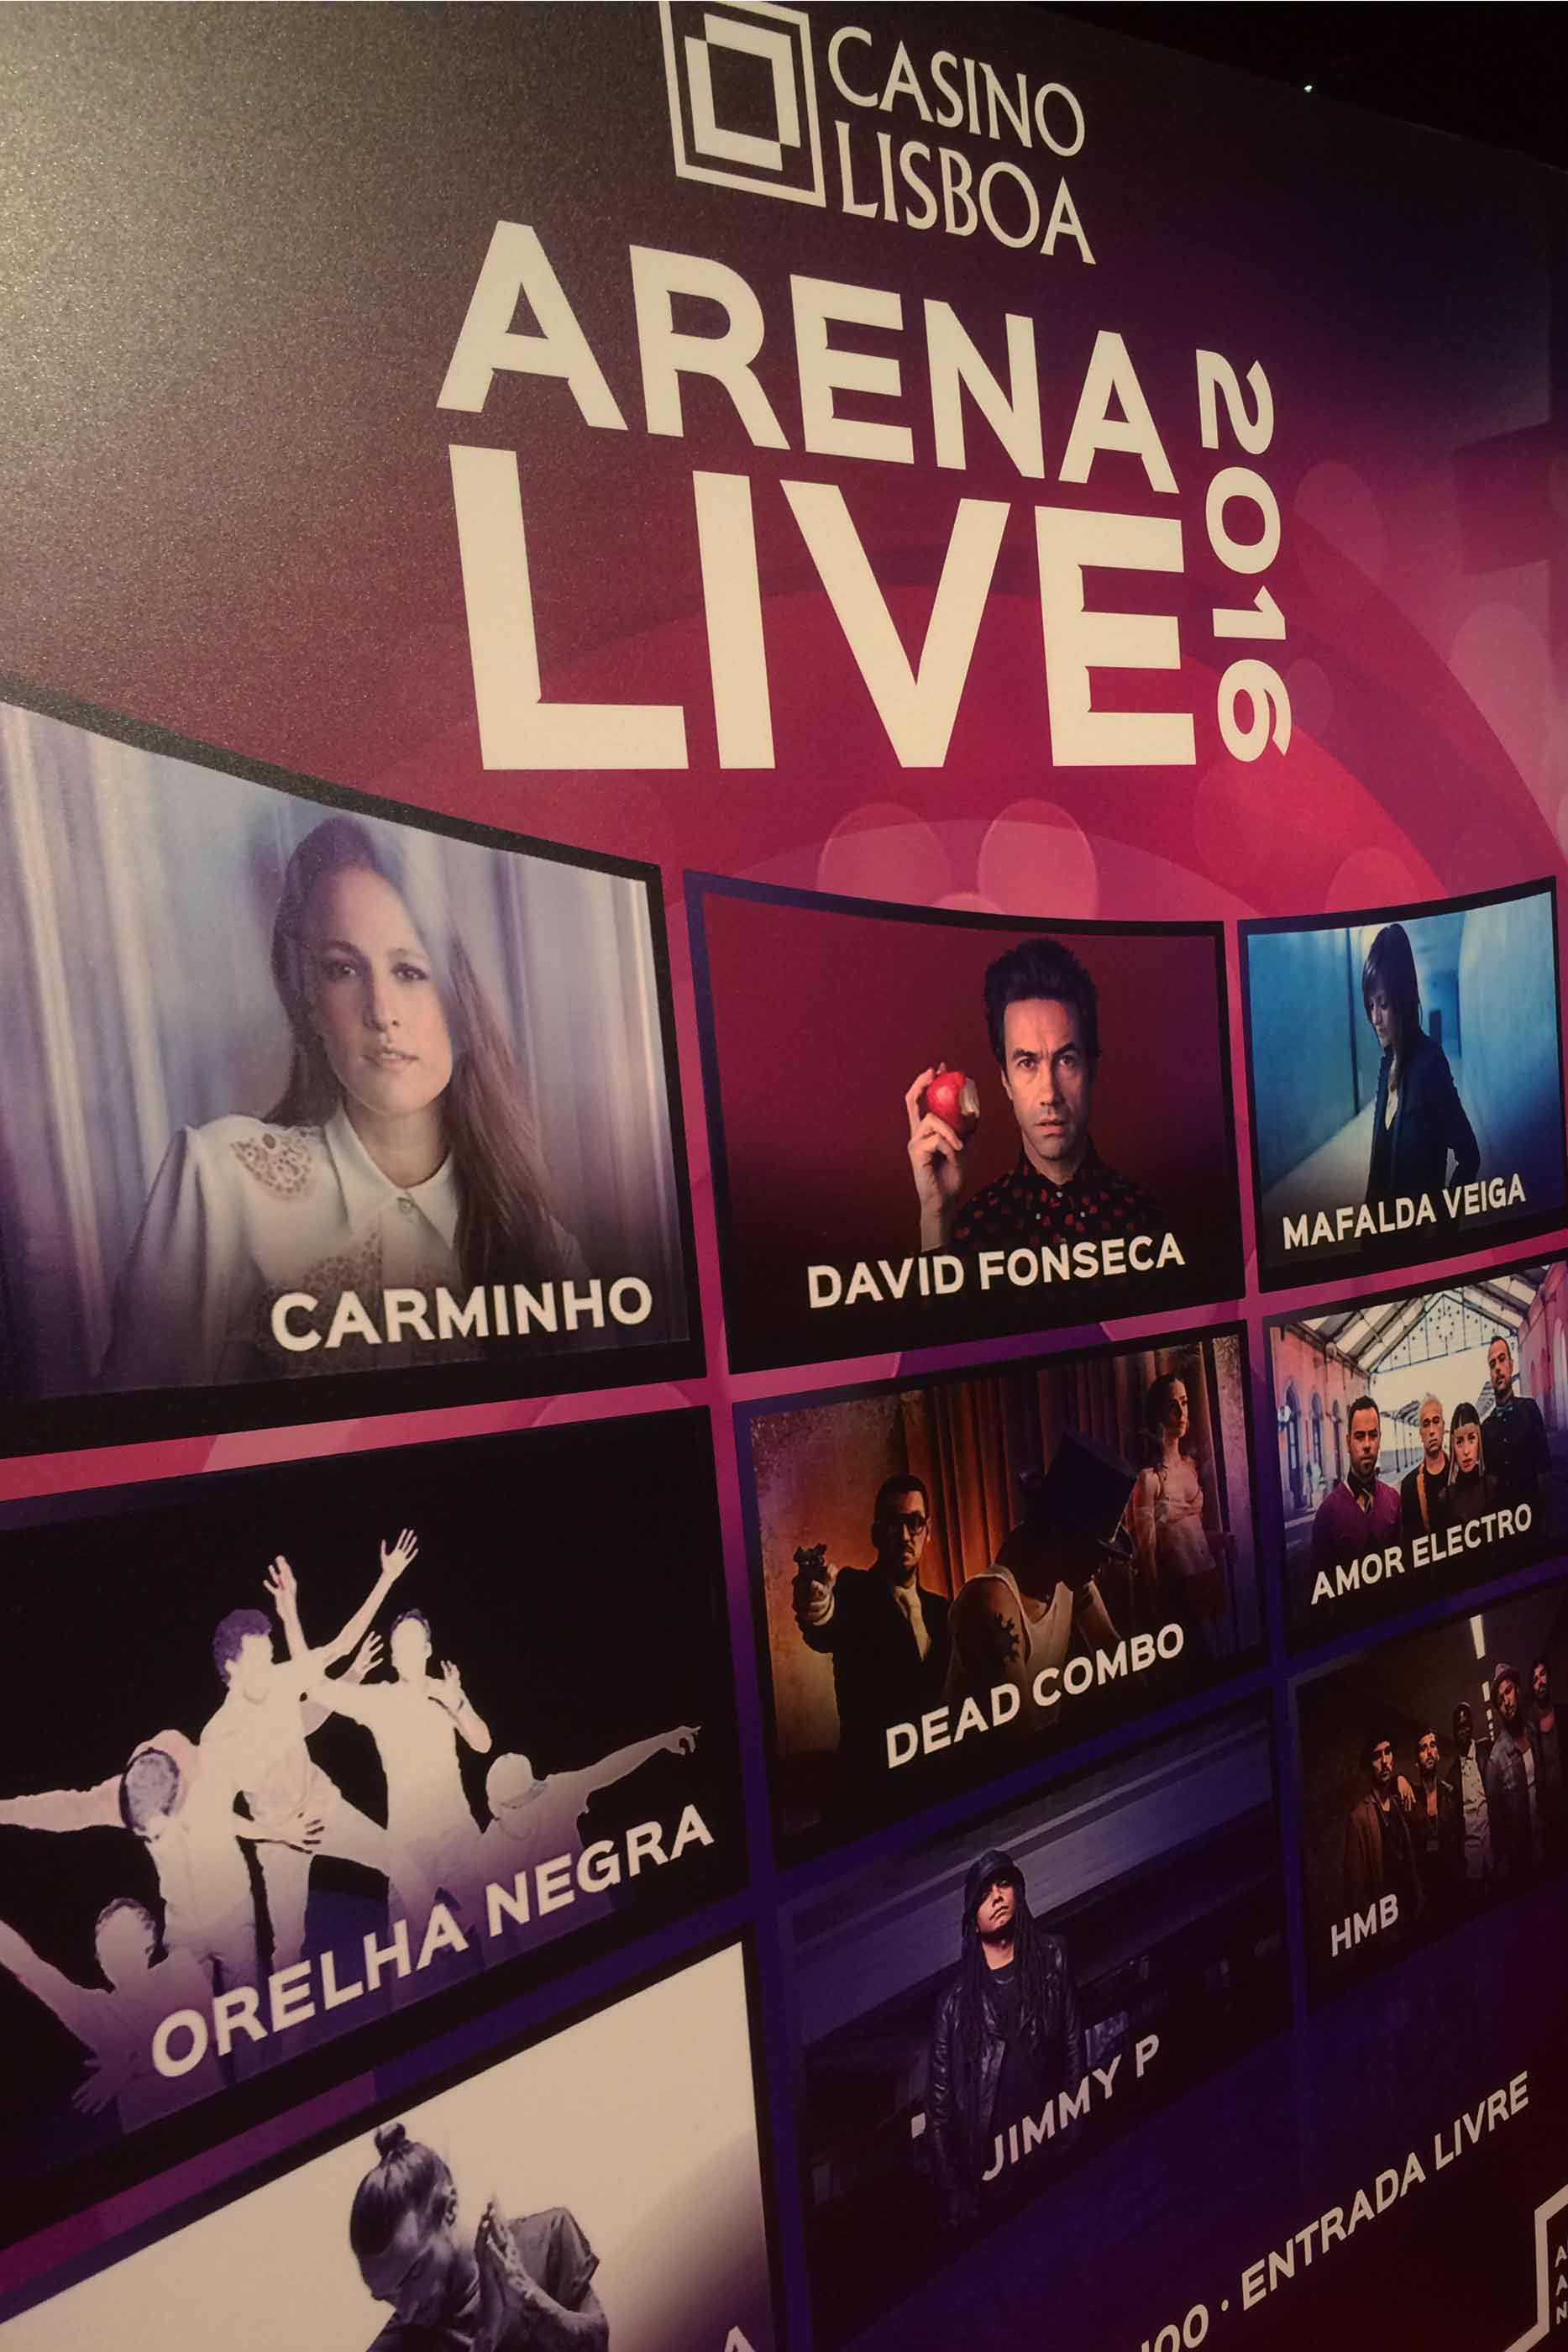 Cartaz do Casino Lisboa relativo ao evento "Arena Live 2016"